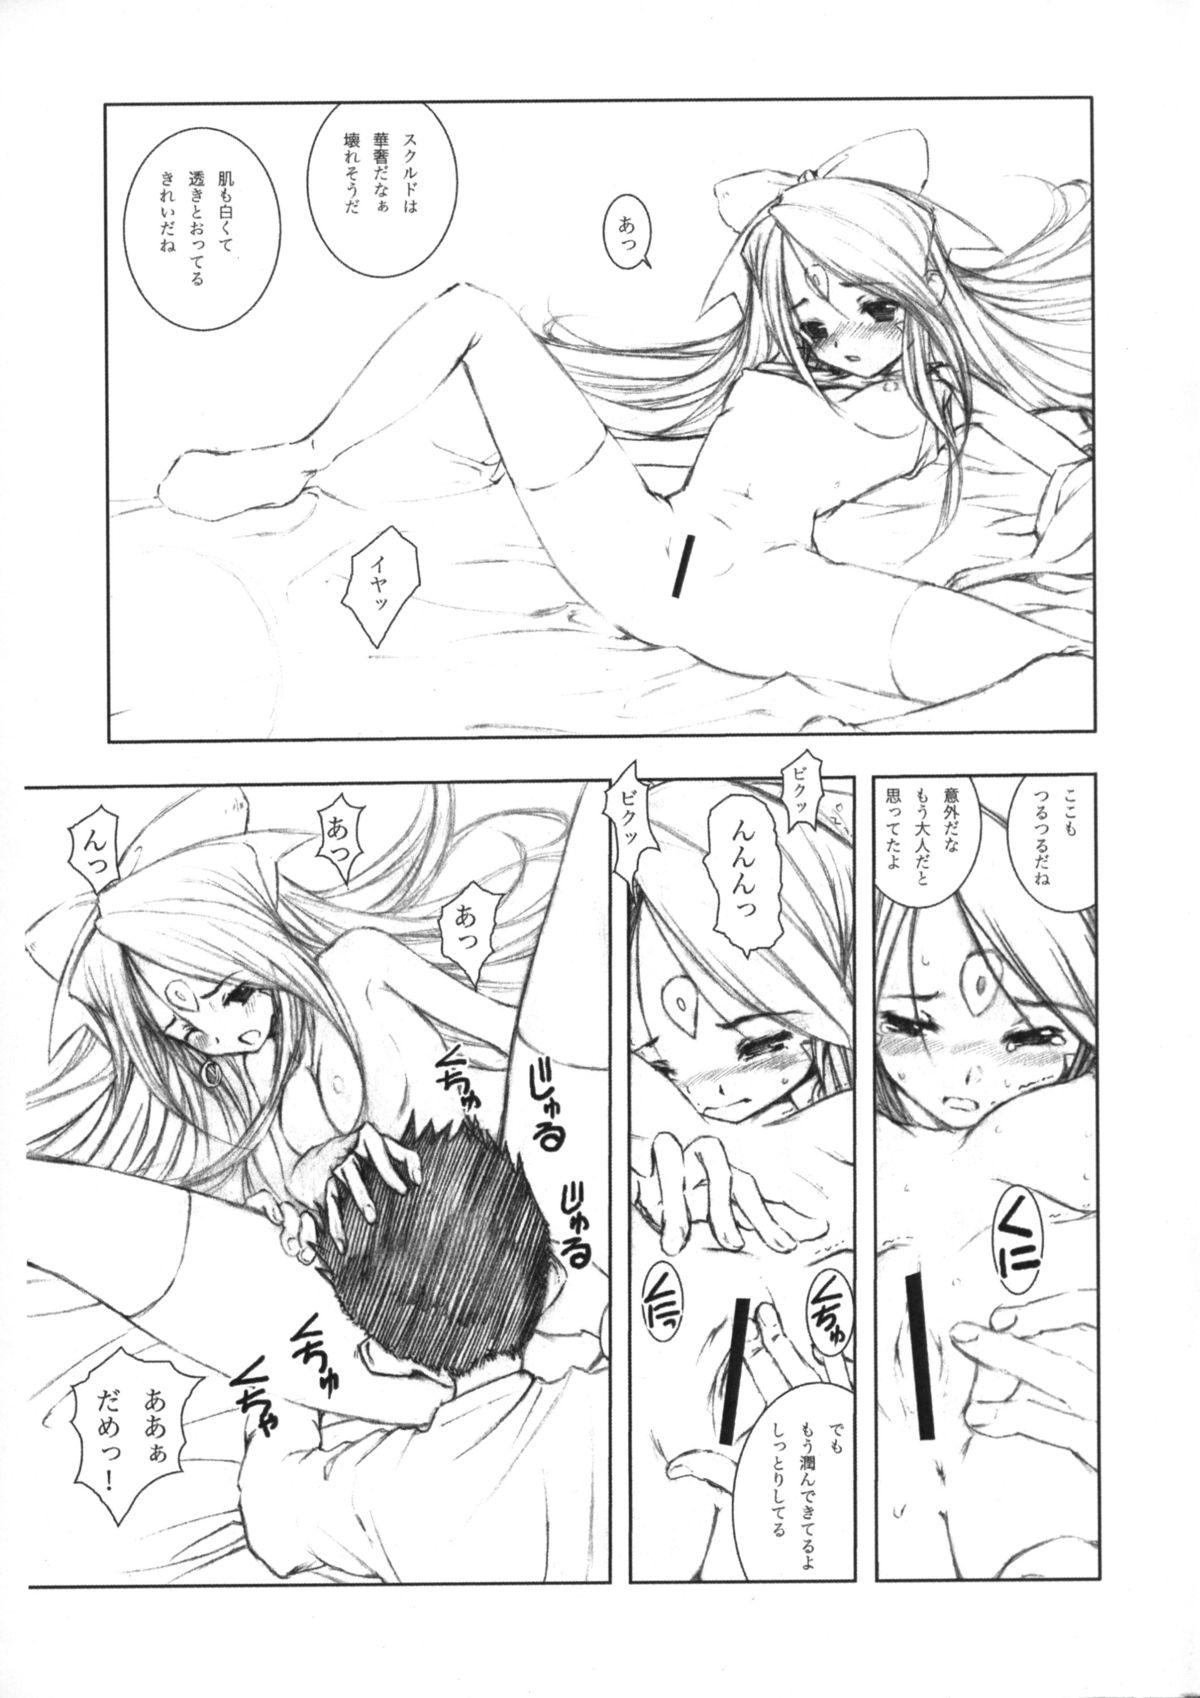 Oldyoung Mellow Goddess #02 Junbi gou & Tears... 2 - Ah my goddess Suck - Page 14